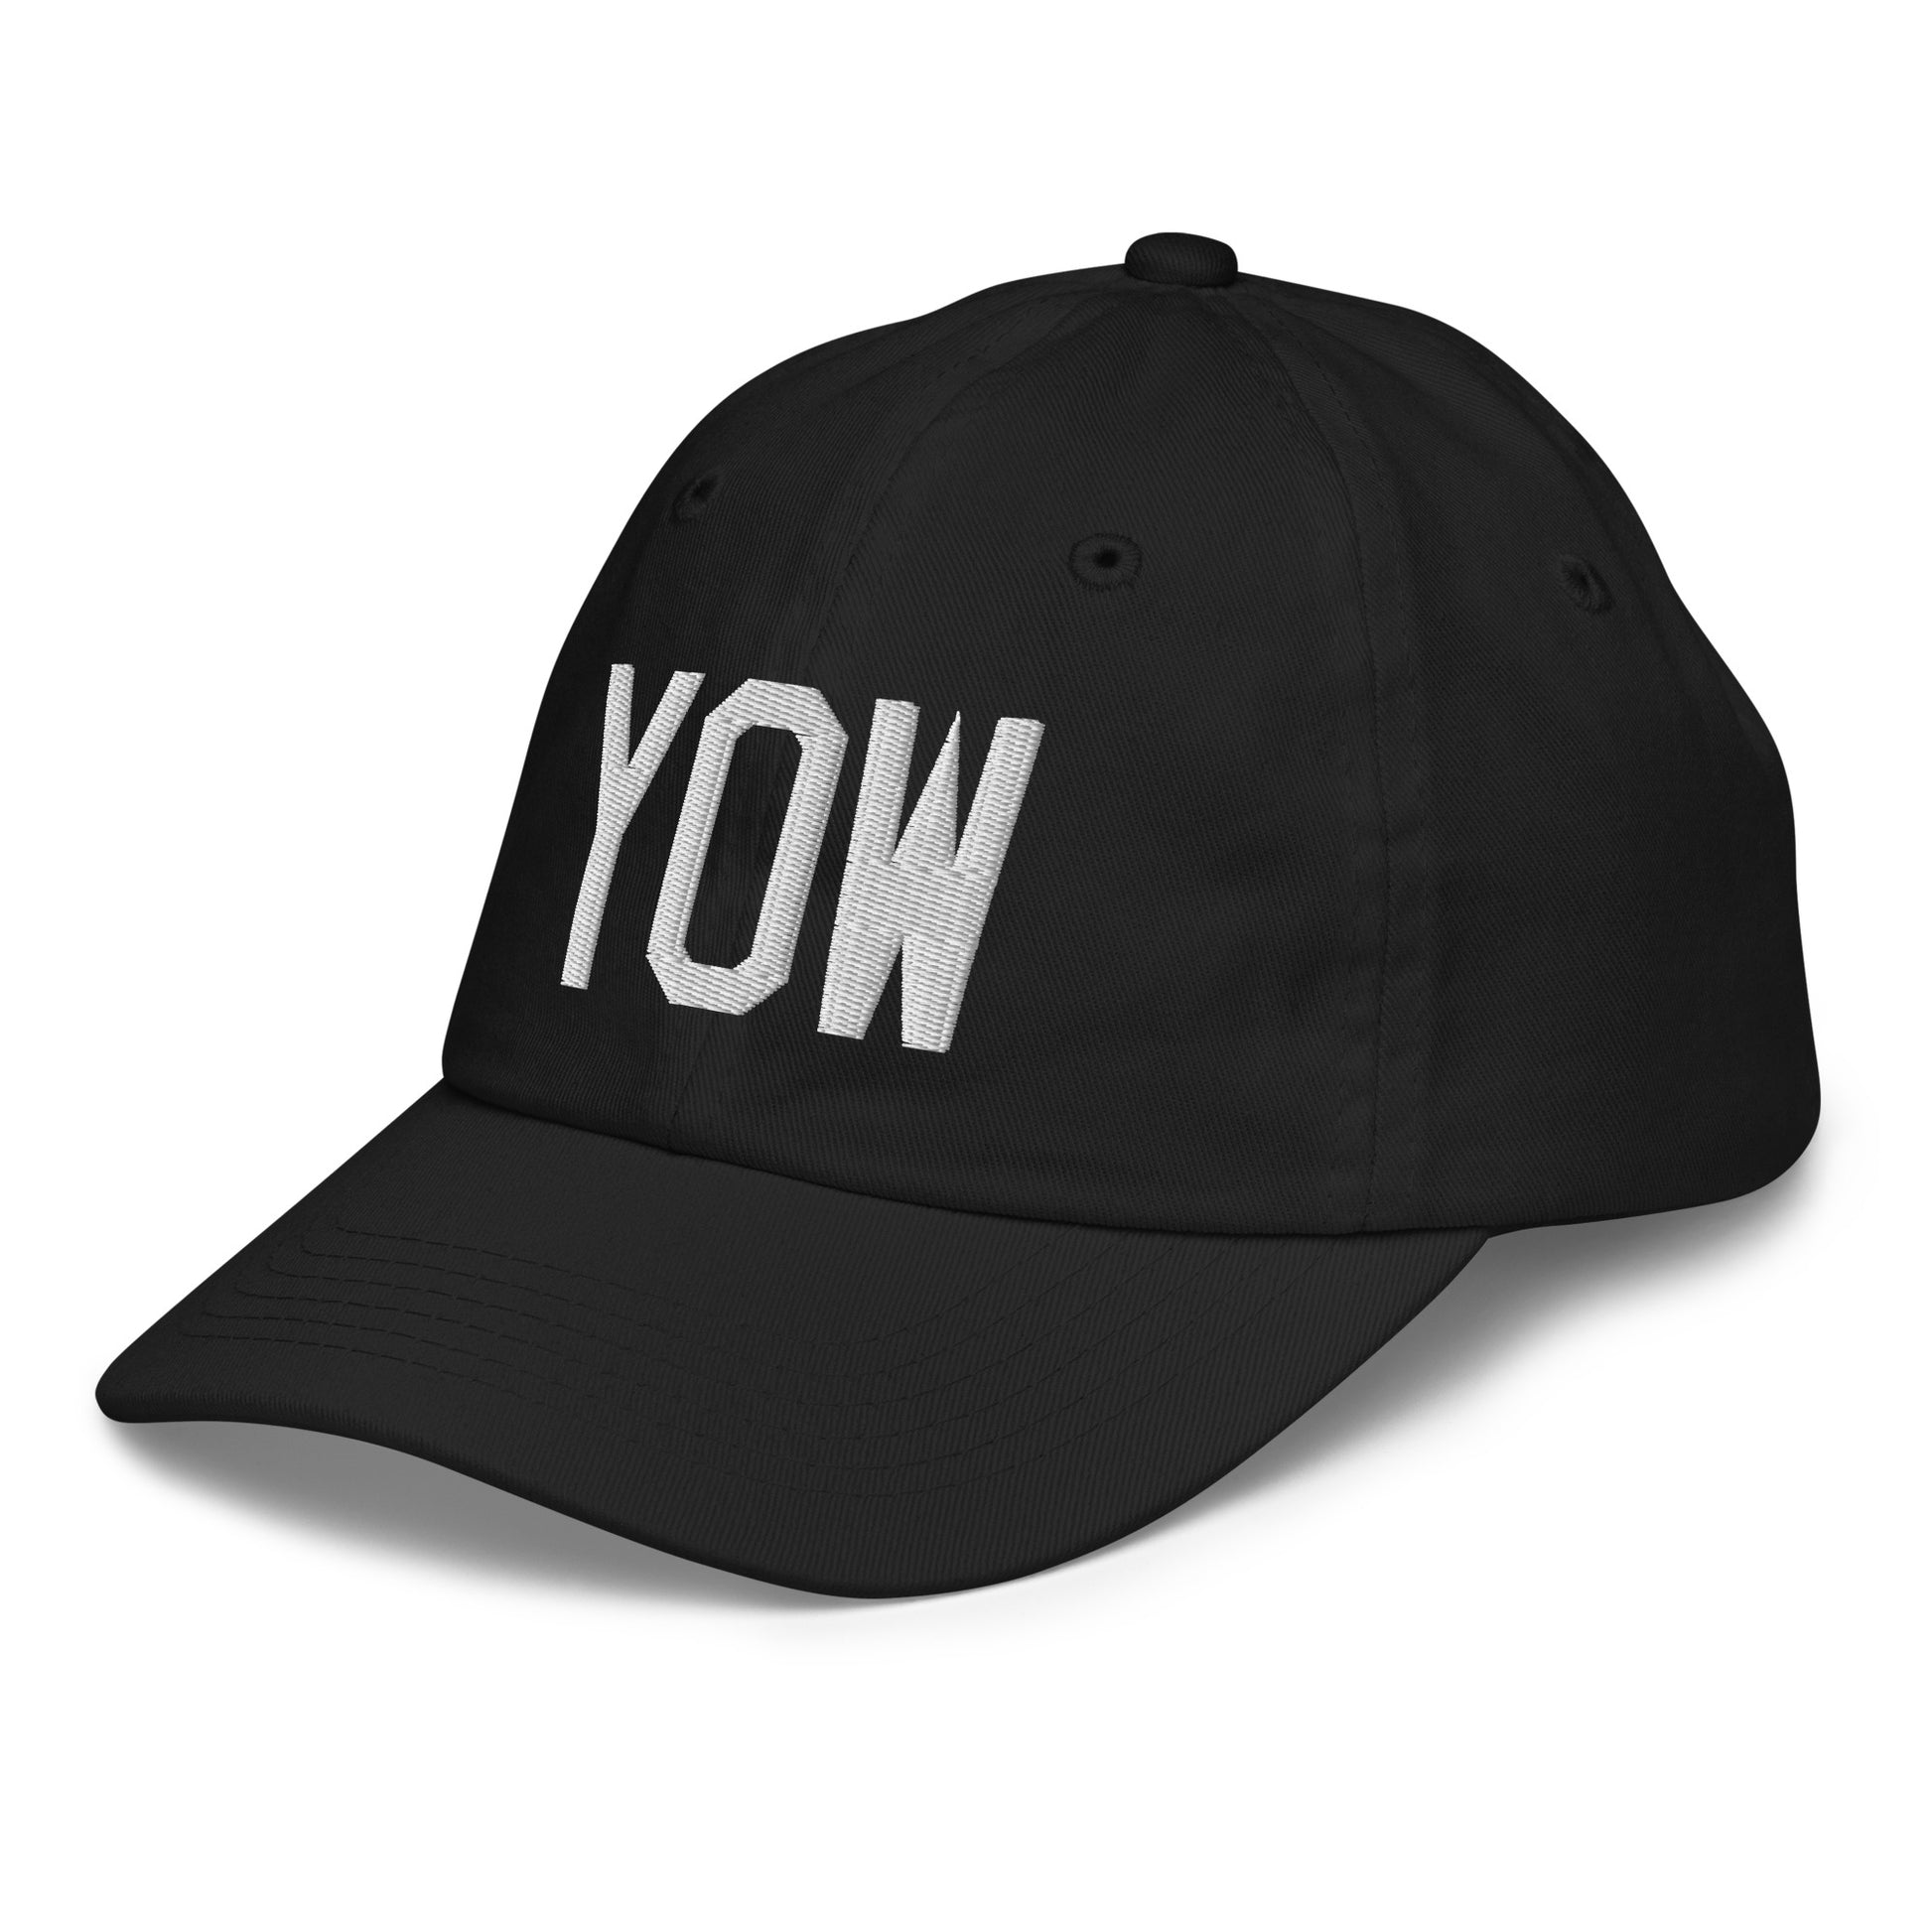 Airport Code Kid's Baseball Cap - White • YOW Ottawa • YHM Designs - Image 13